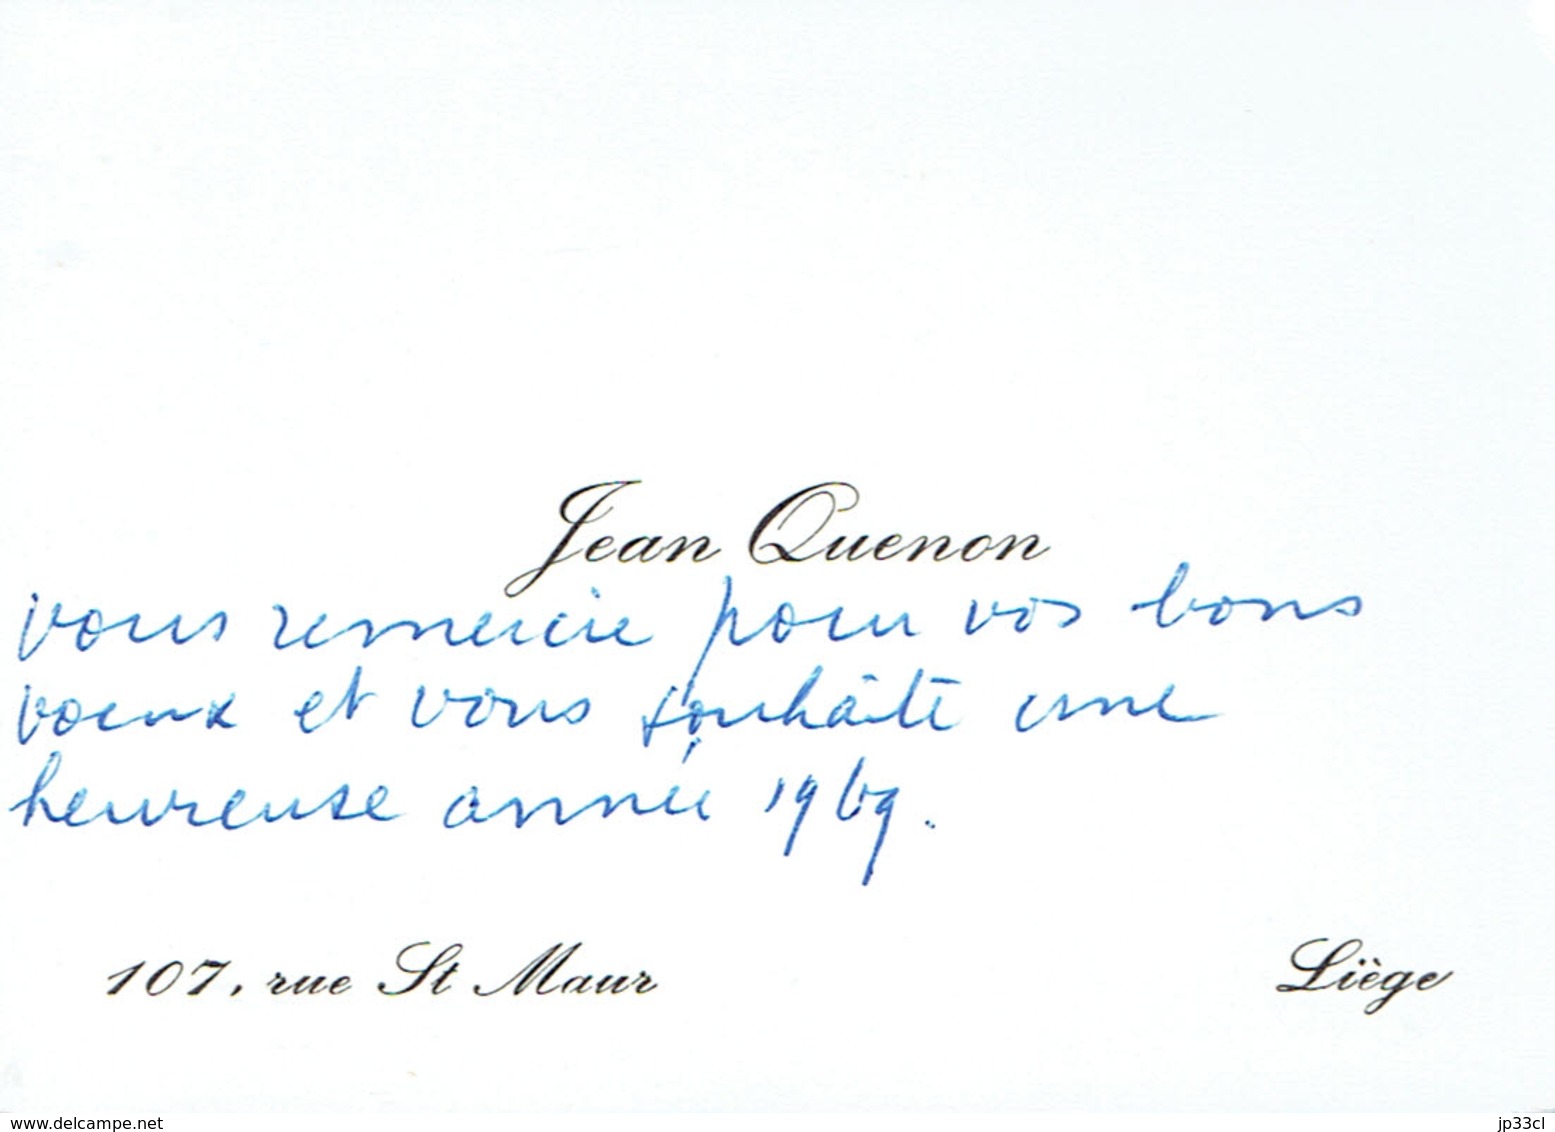 Ancienne Carte De Visite Autographe De Jean Quenon, Professeur à L'ULG, Rue St Maur, Liège (vers 1968) - Visiting Cards